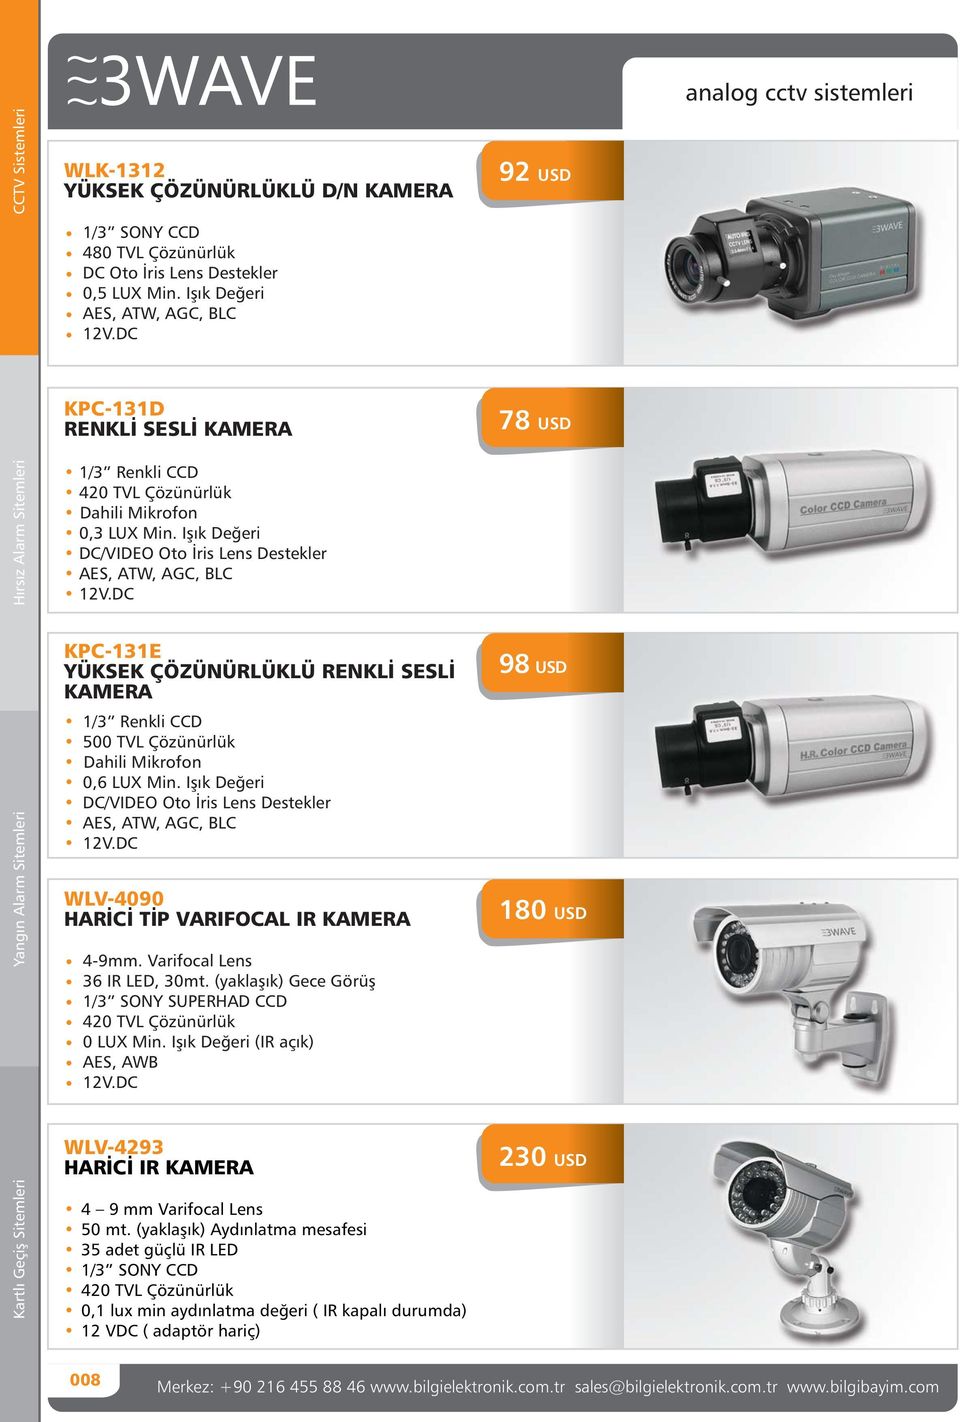 Işık Değeri DC/VIDEO Oto İris Lens Destekler AES, ATW, AGC, BLC KPC-131E YÜKSEK ÇÖZÜNÜRLÜKLÜ RENKLİ SESLİ KAMERA WLV-4090 HARİCİ TİP VARIFOCAL IR KAMERA 500 TVL Çözünürlük Dahili Mikrofon 0,6 LUX Min.